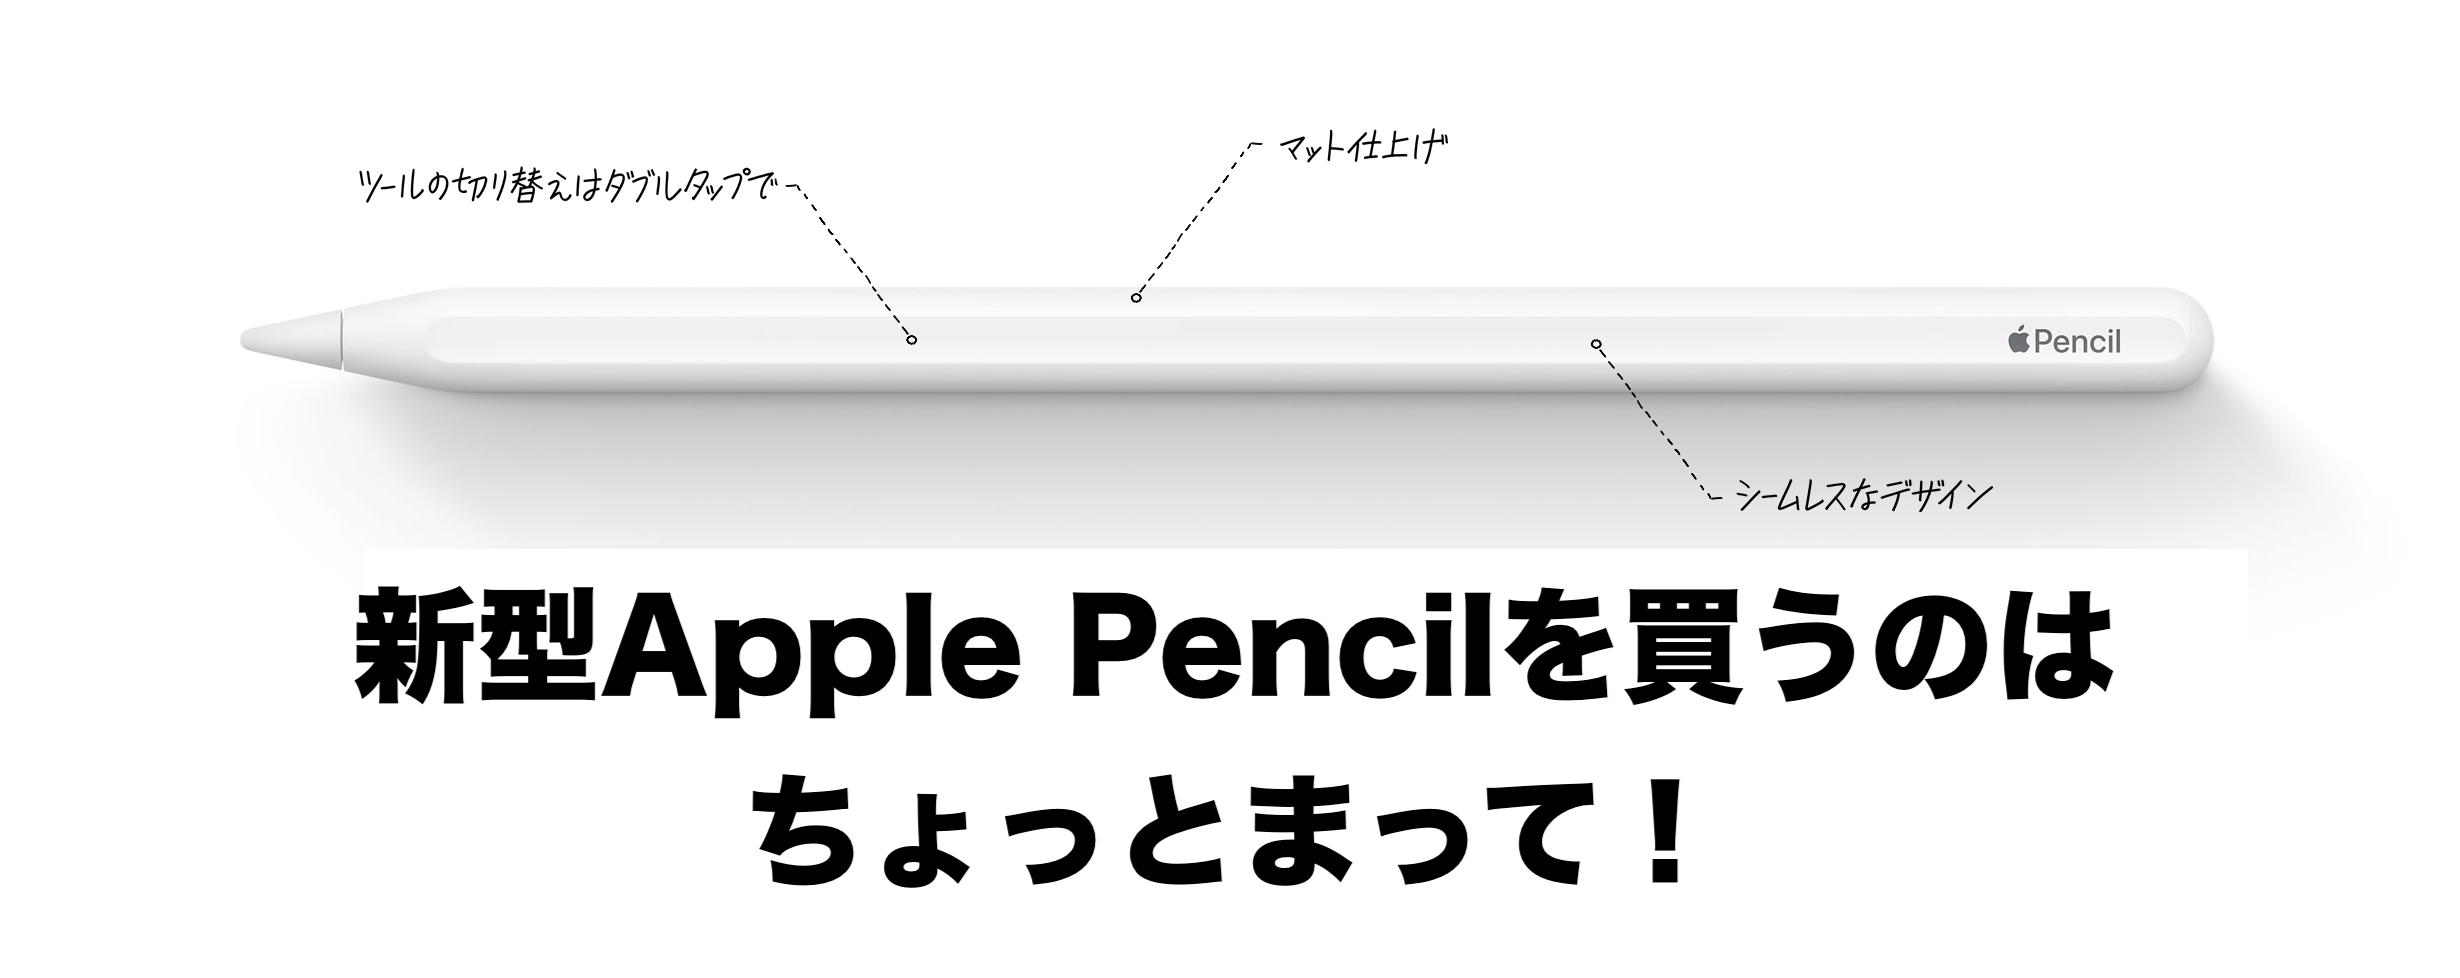 ないため Apple Pencil アップルペンシル第二世代 たので